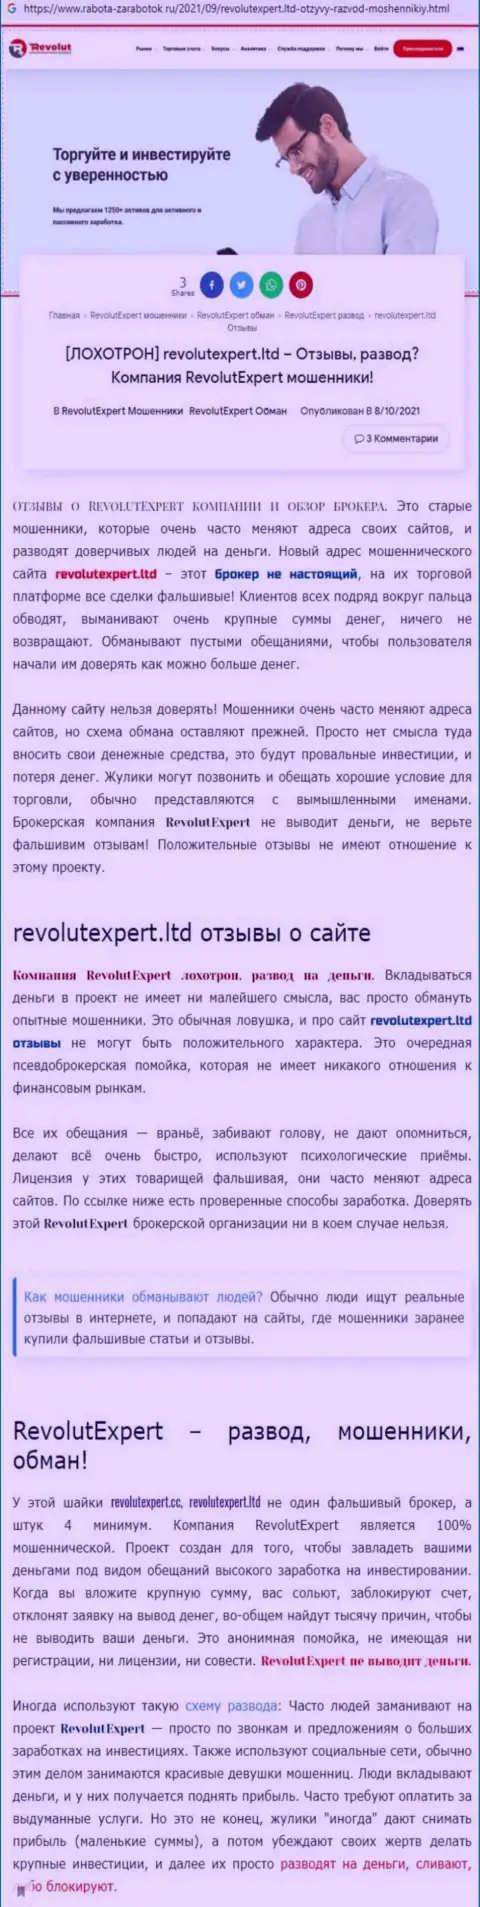 RevolutExpert - это бесспорно МОШЕННИКИ !!! Обзор проделок организации